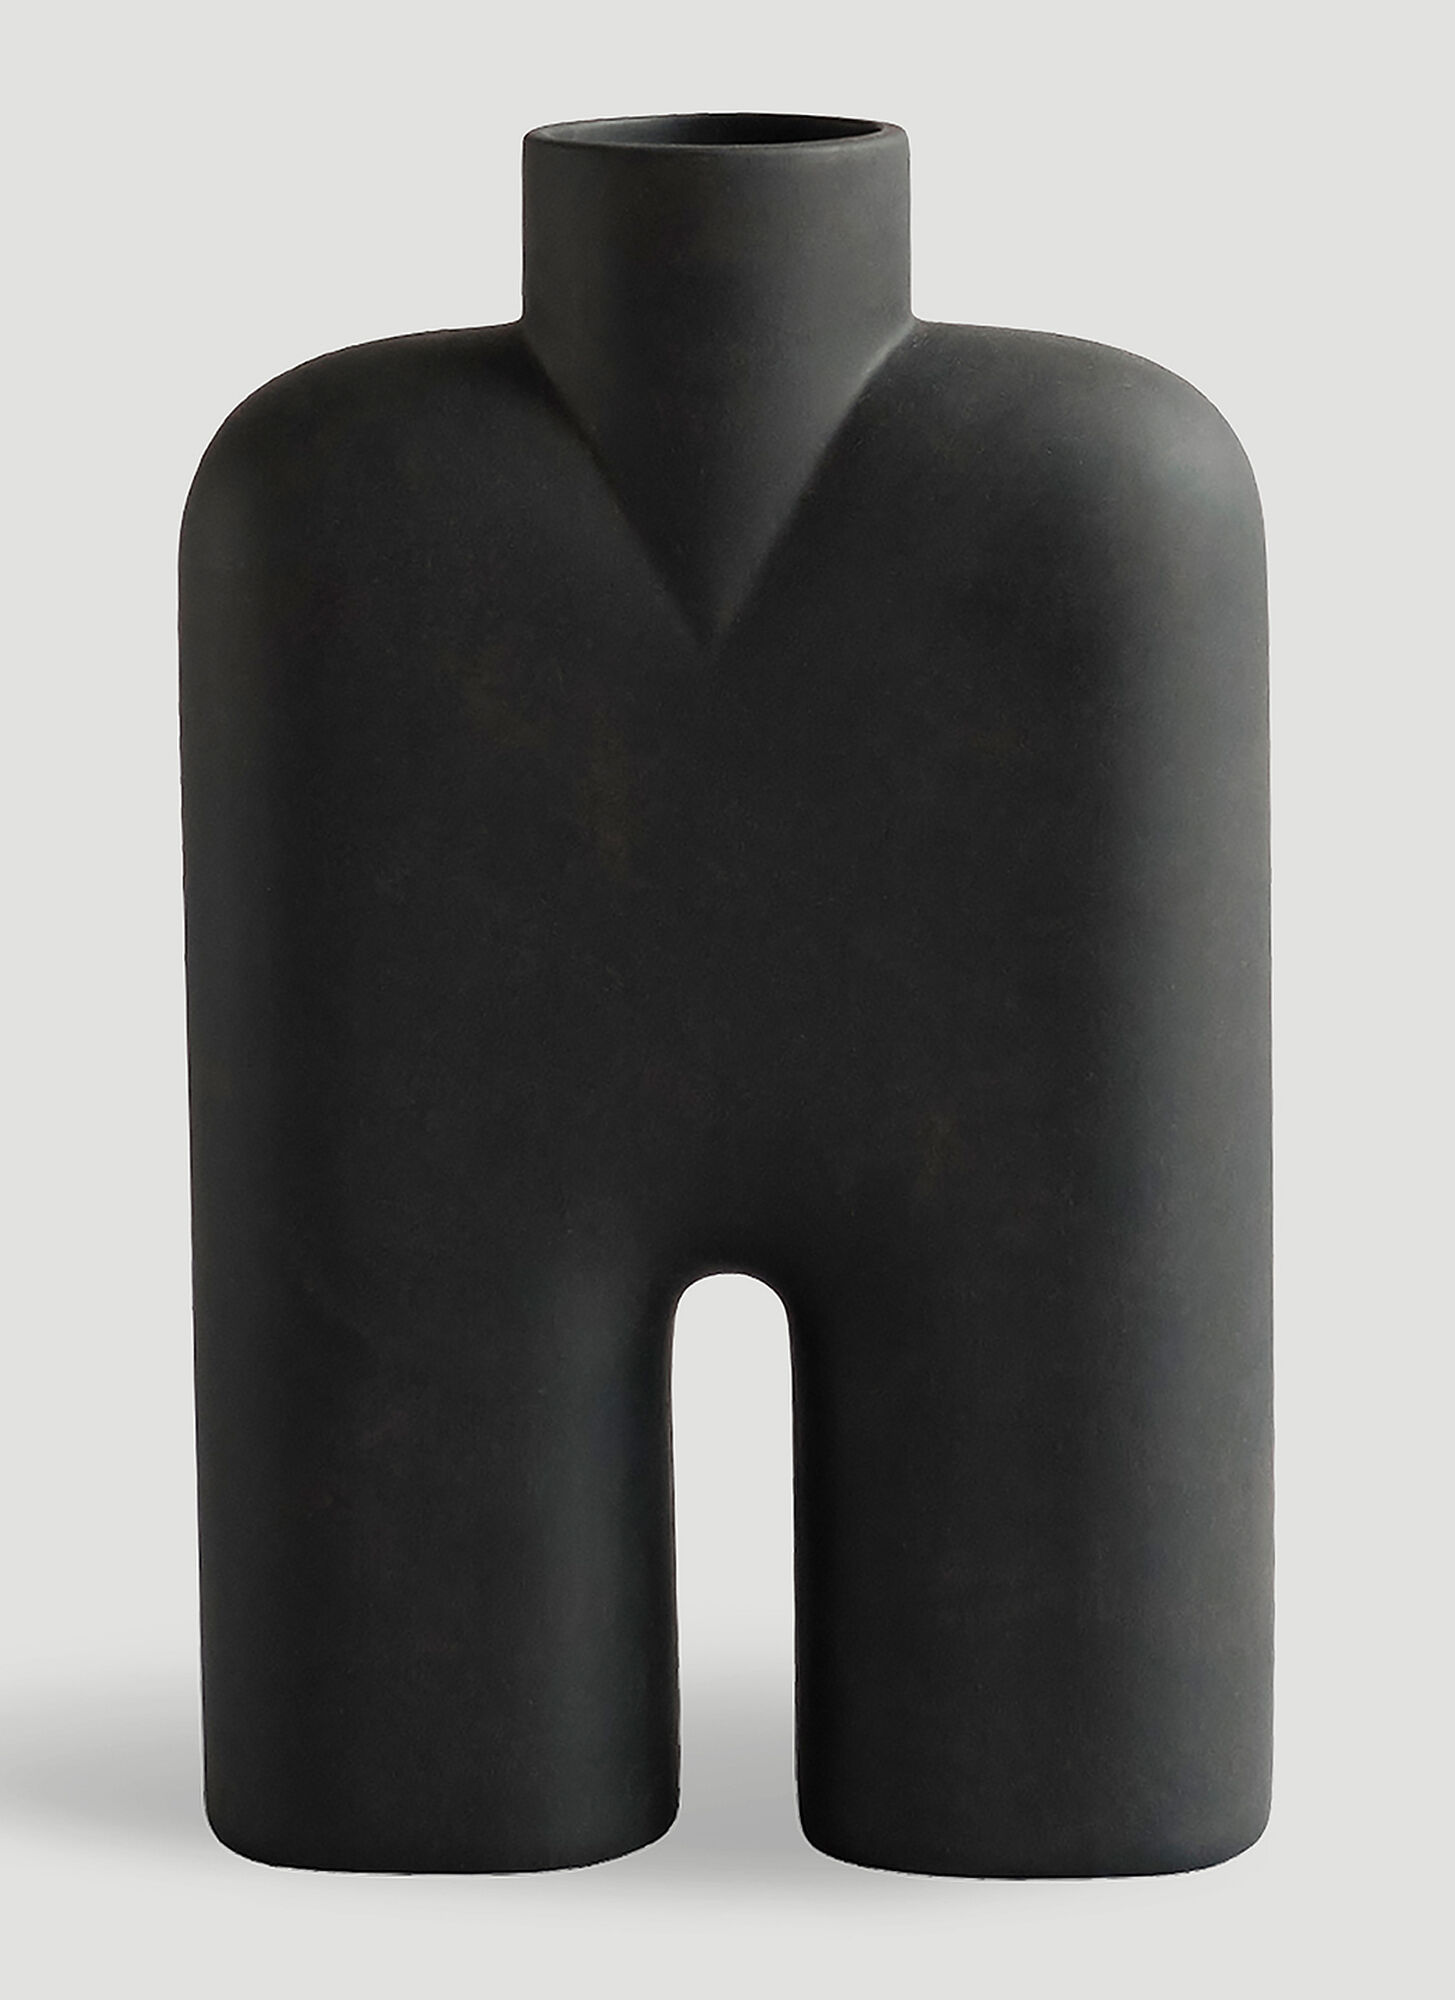 101 Copenhagen Cobra Tall Medium Vase In Black